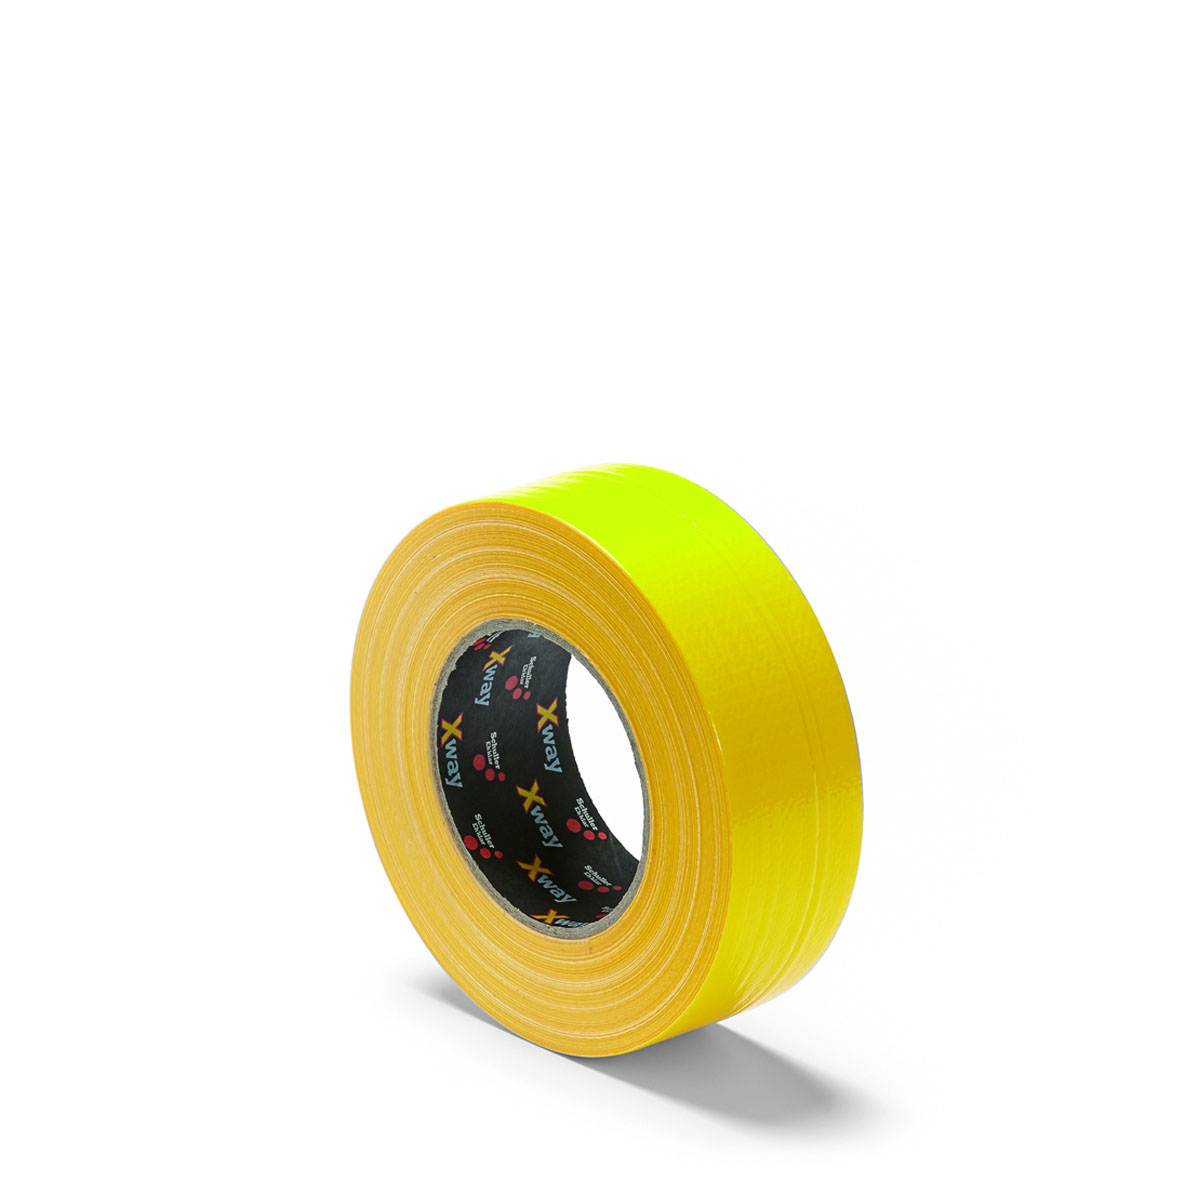 Schuller Gewebeband X-Way Extra Strong gelb 44mmx50m #45765